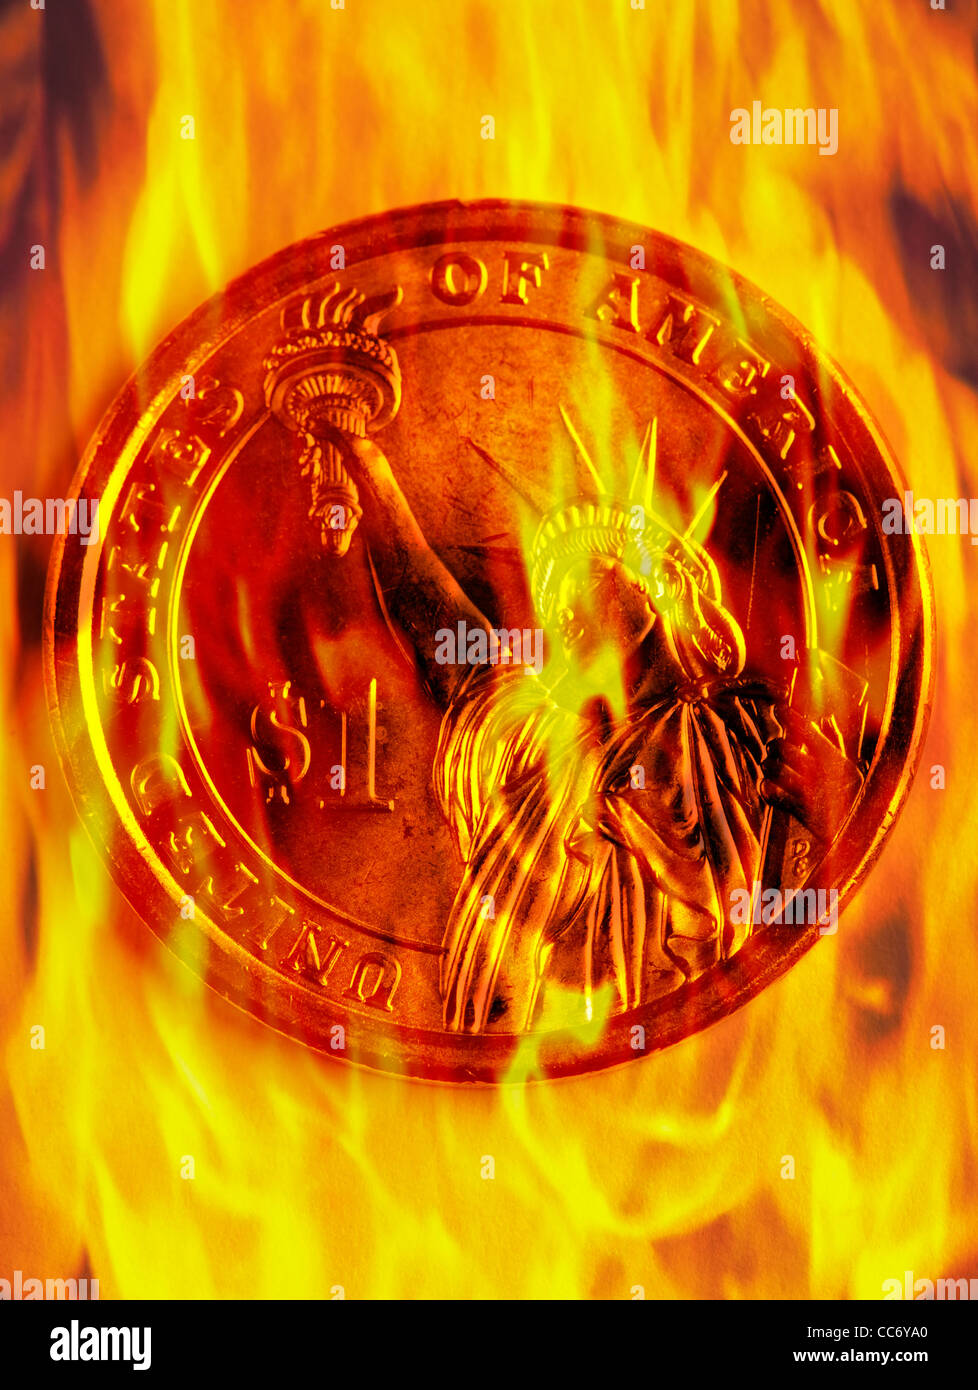 Concetto di immagine Dollar coin bruciato sul fuoco con fiamma arancione Foto Stock